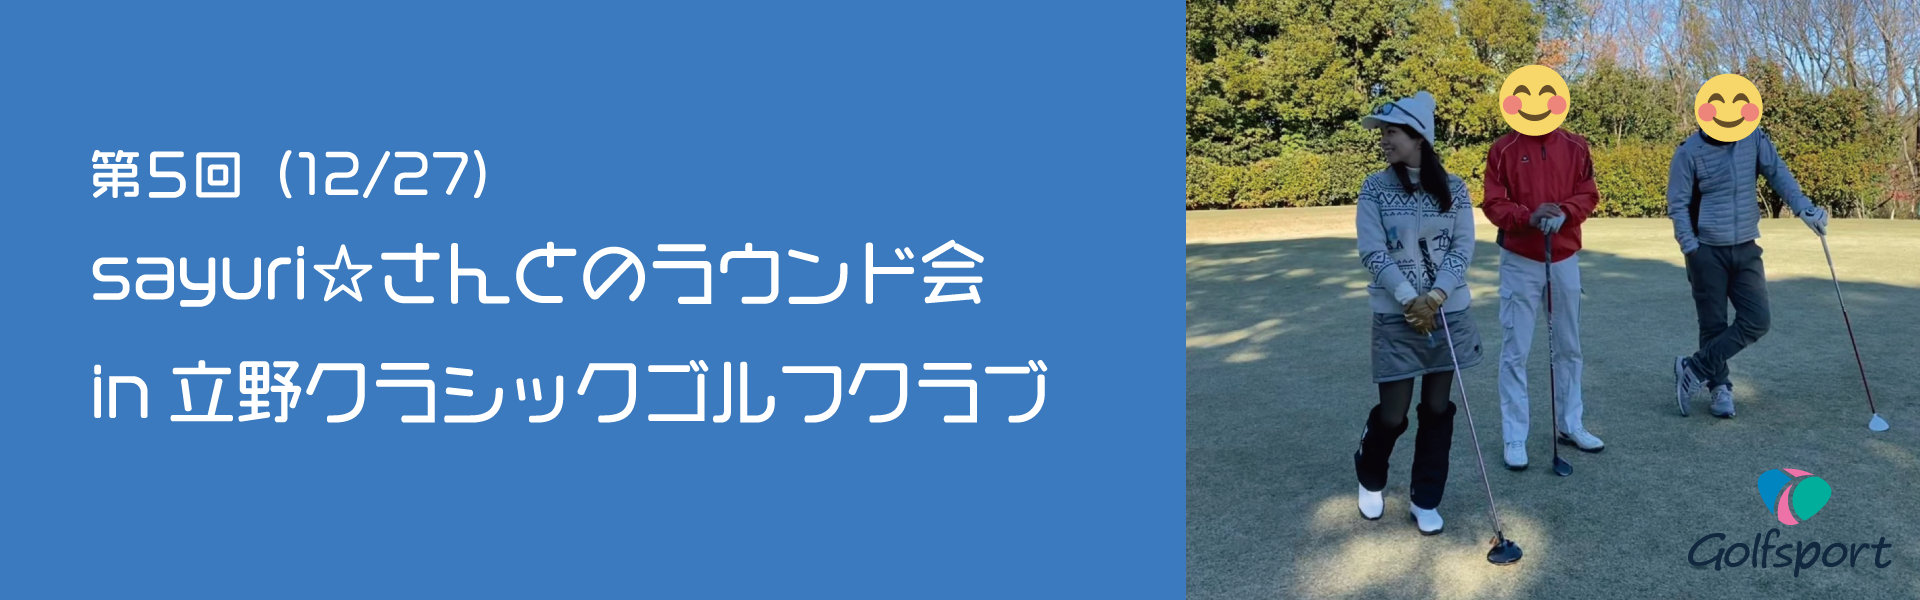 第5回sayuri☆さんとのラウンド会in立野クラシックゴルフクラブ開催終了いたしました☆